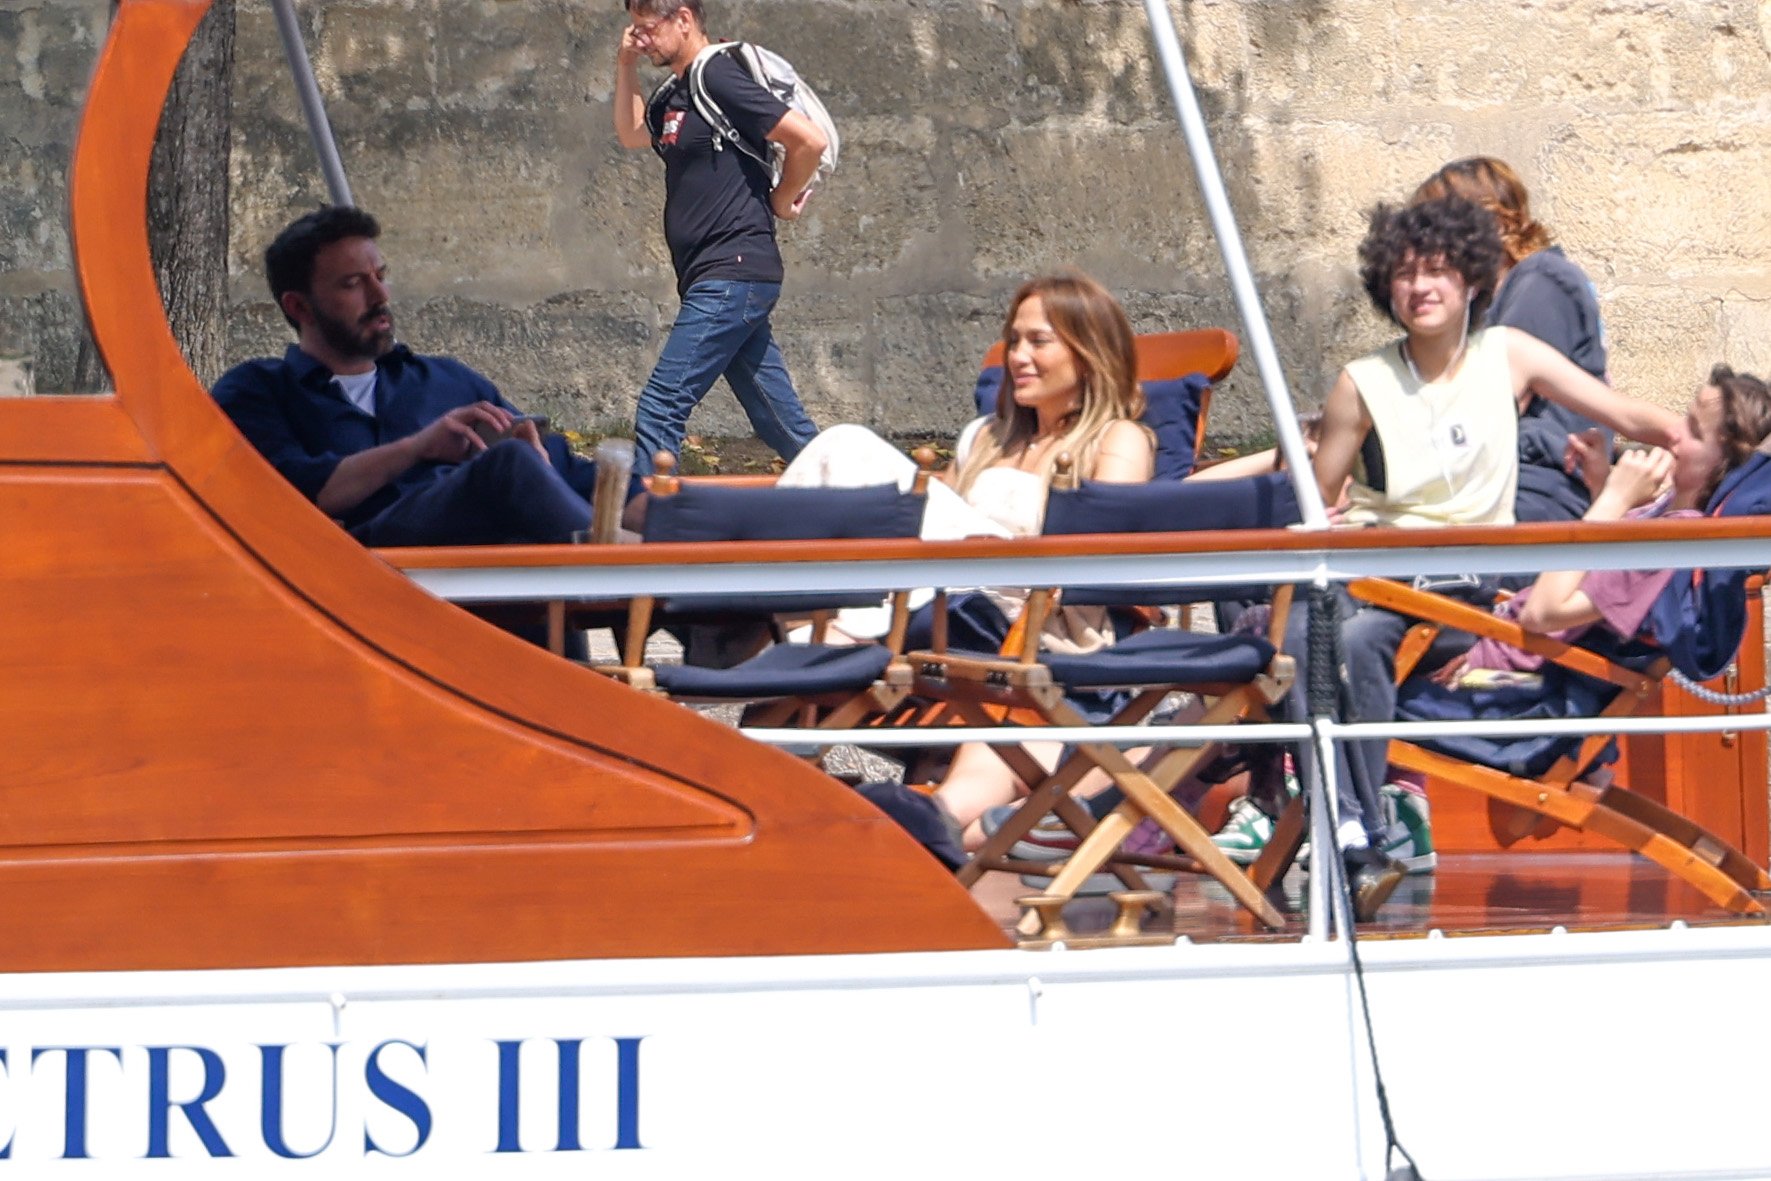 Jennifer López y Ben Affleck navegan por el río Sena con algunos de sus hijos, Seraphina Affleck y Emme Muñiz, el 23 de julio de 2022 en París, Francia | Foto: Getty Images